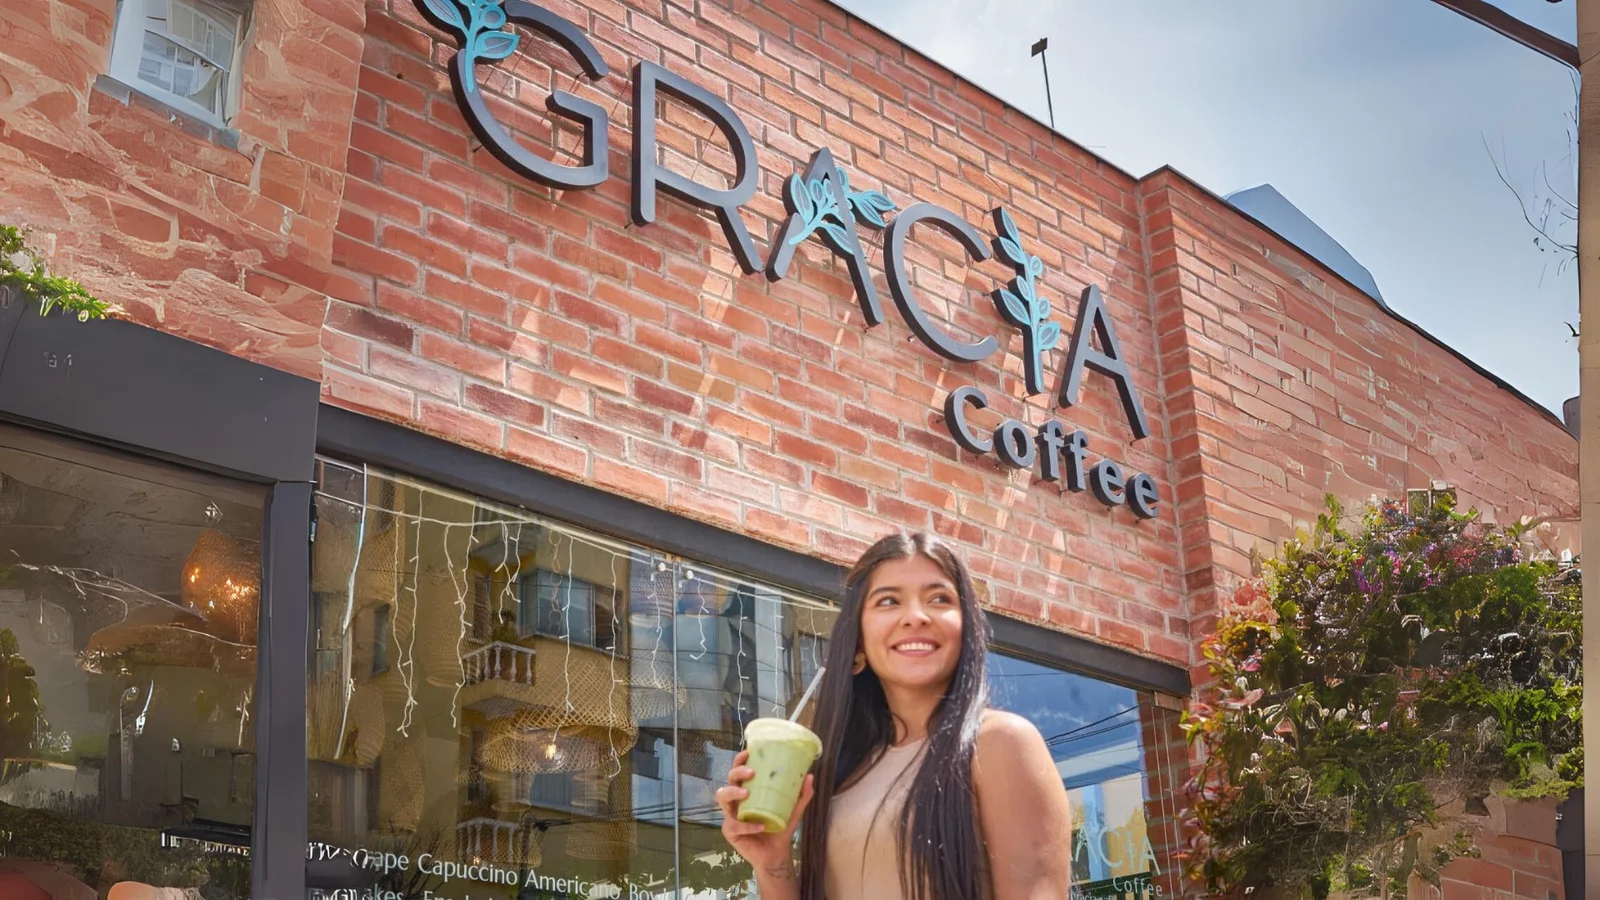 Gracia Coffee